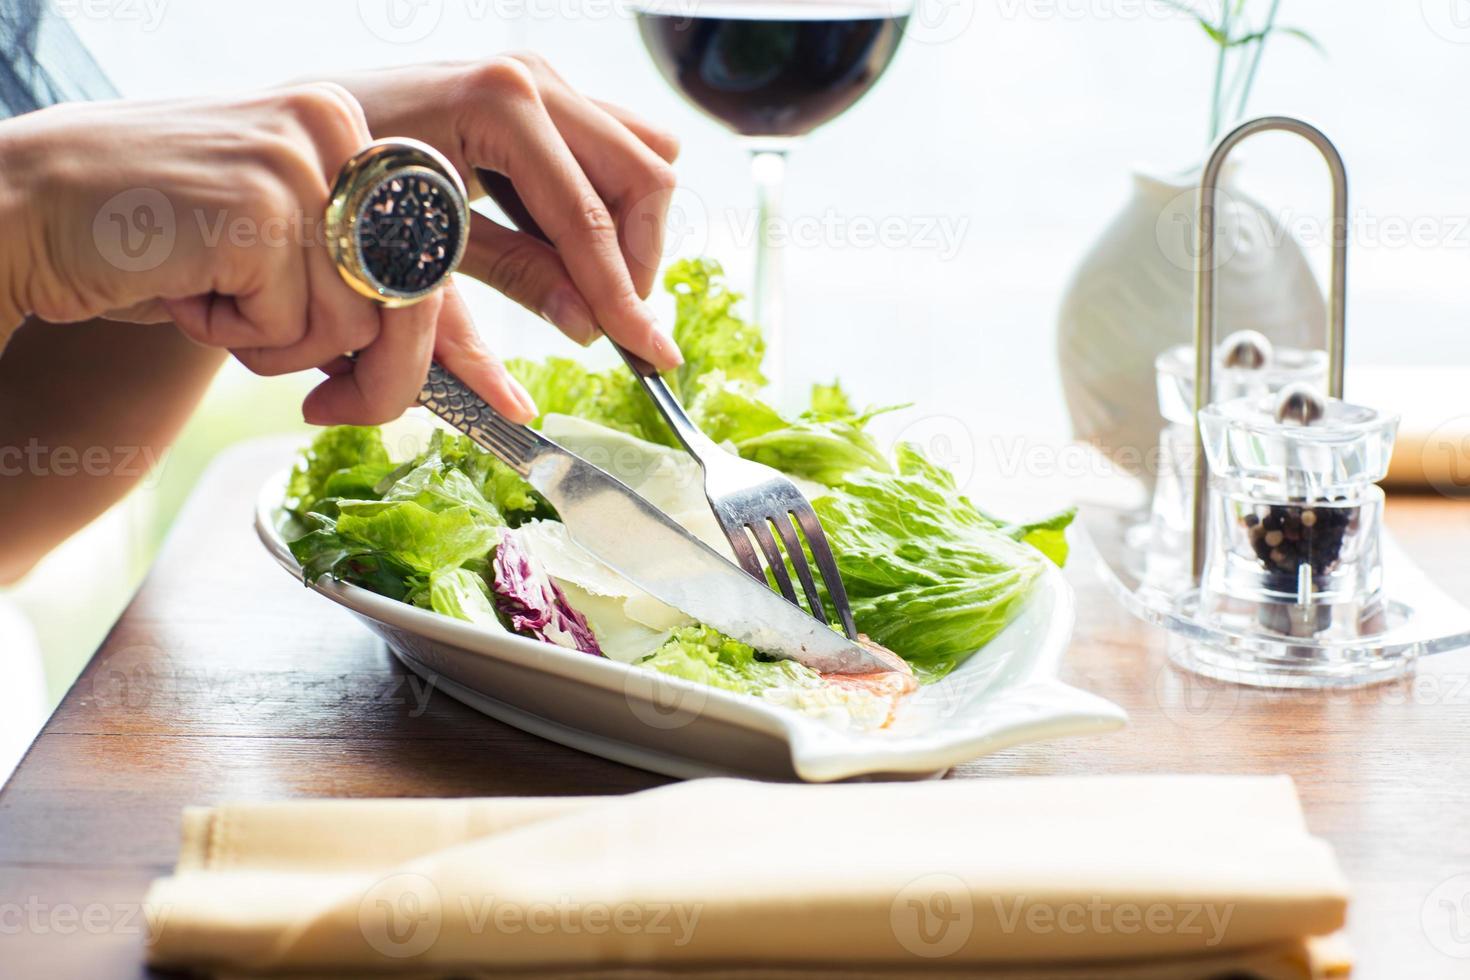 vrouwelijke handen die salade eten foto